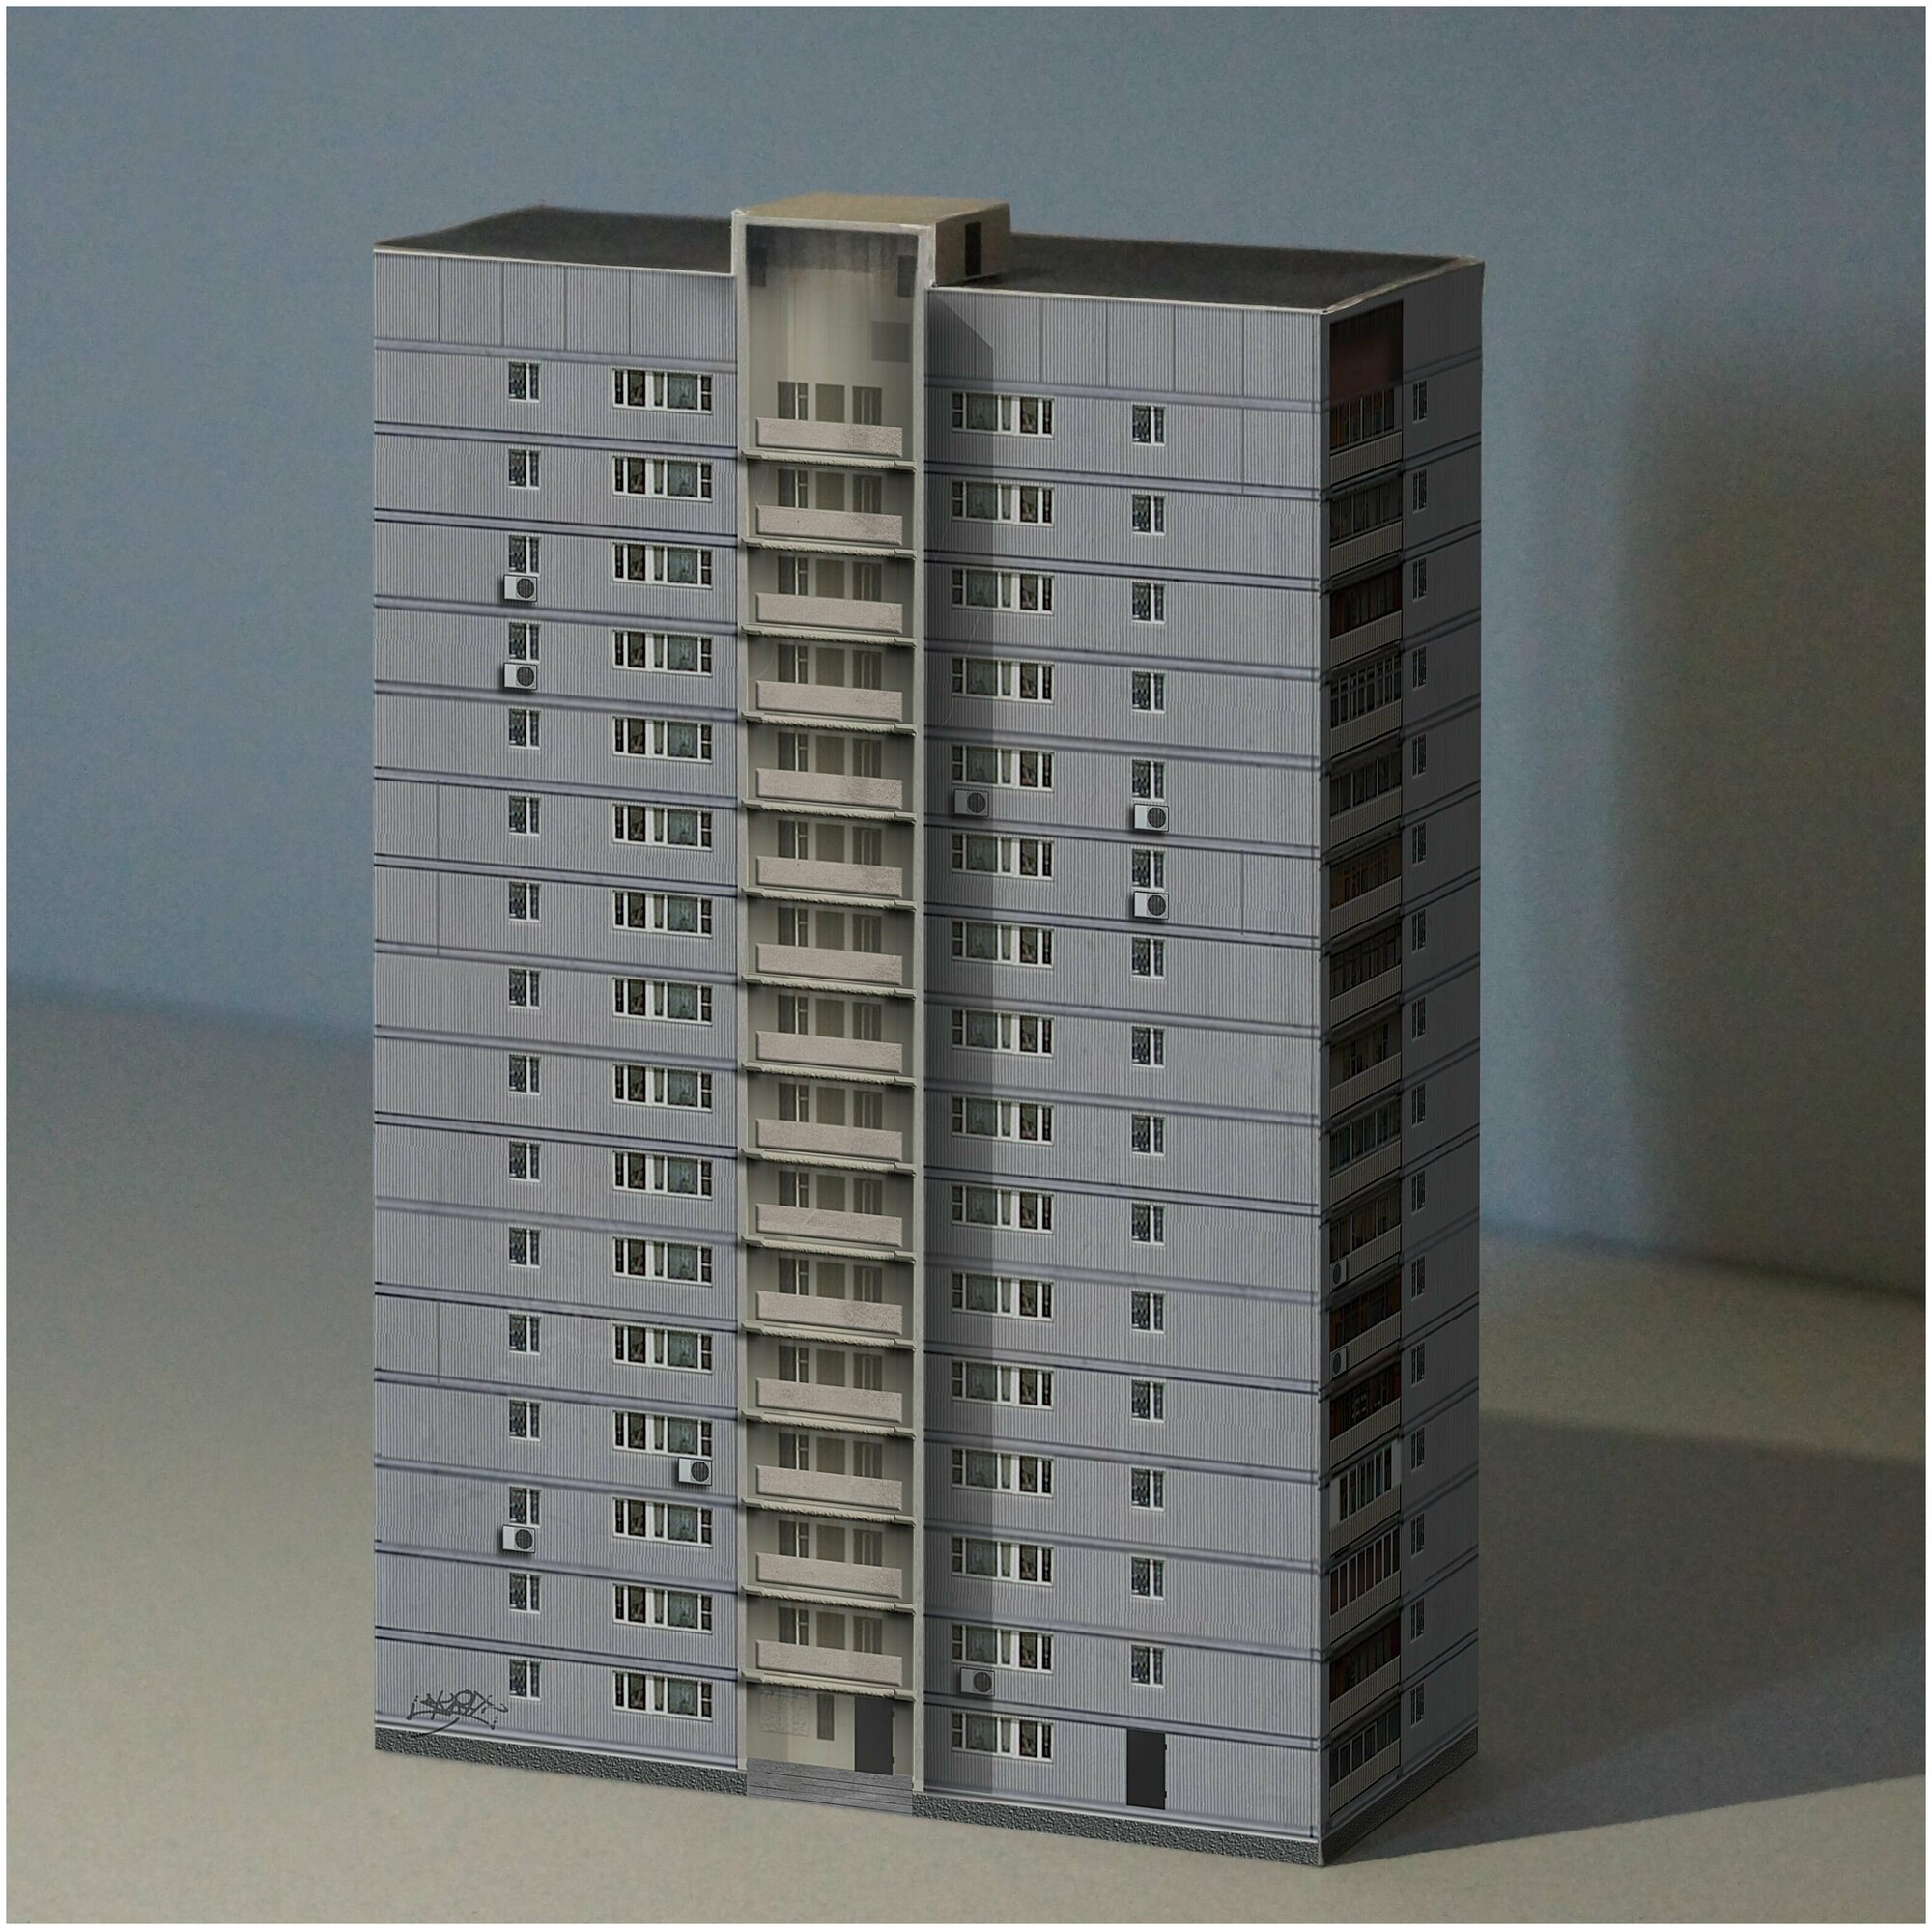 Сборная 3д модель зданий "Этажи. Создай свой район. Книга 1" конструктор бумажный 10 домов панельки 1:300